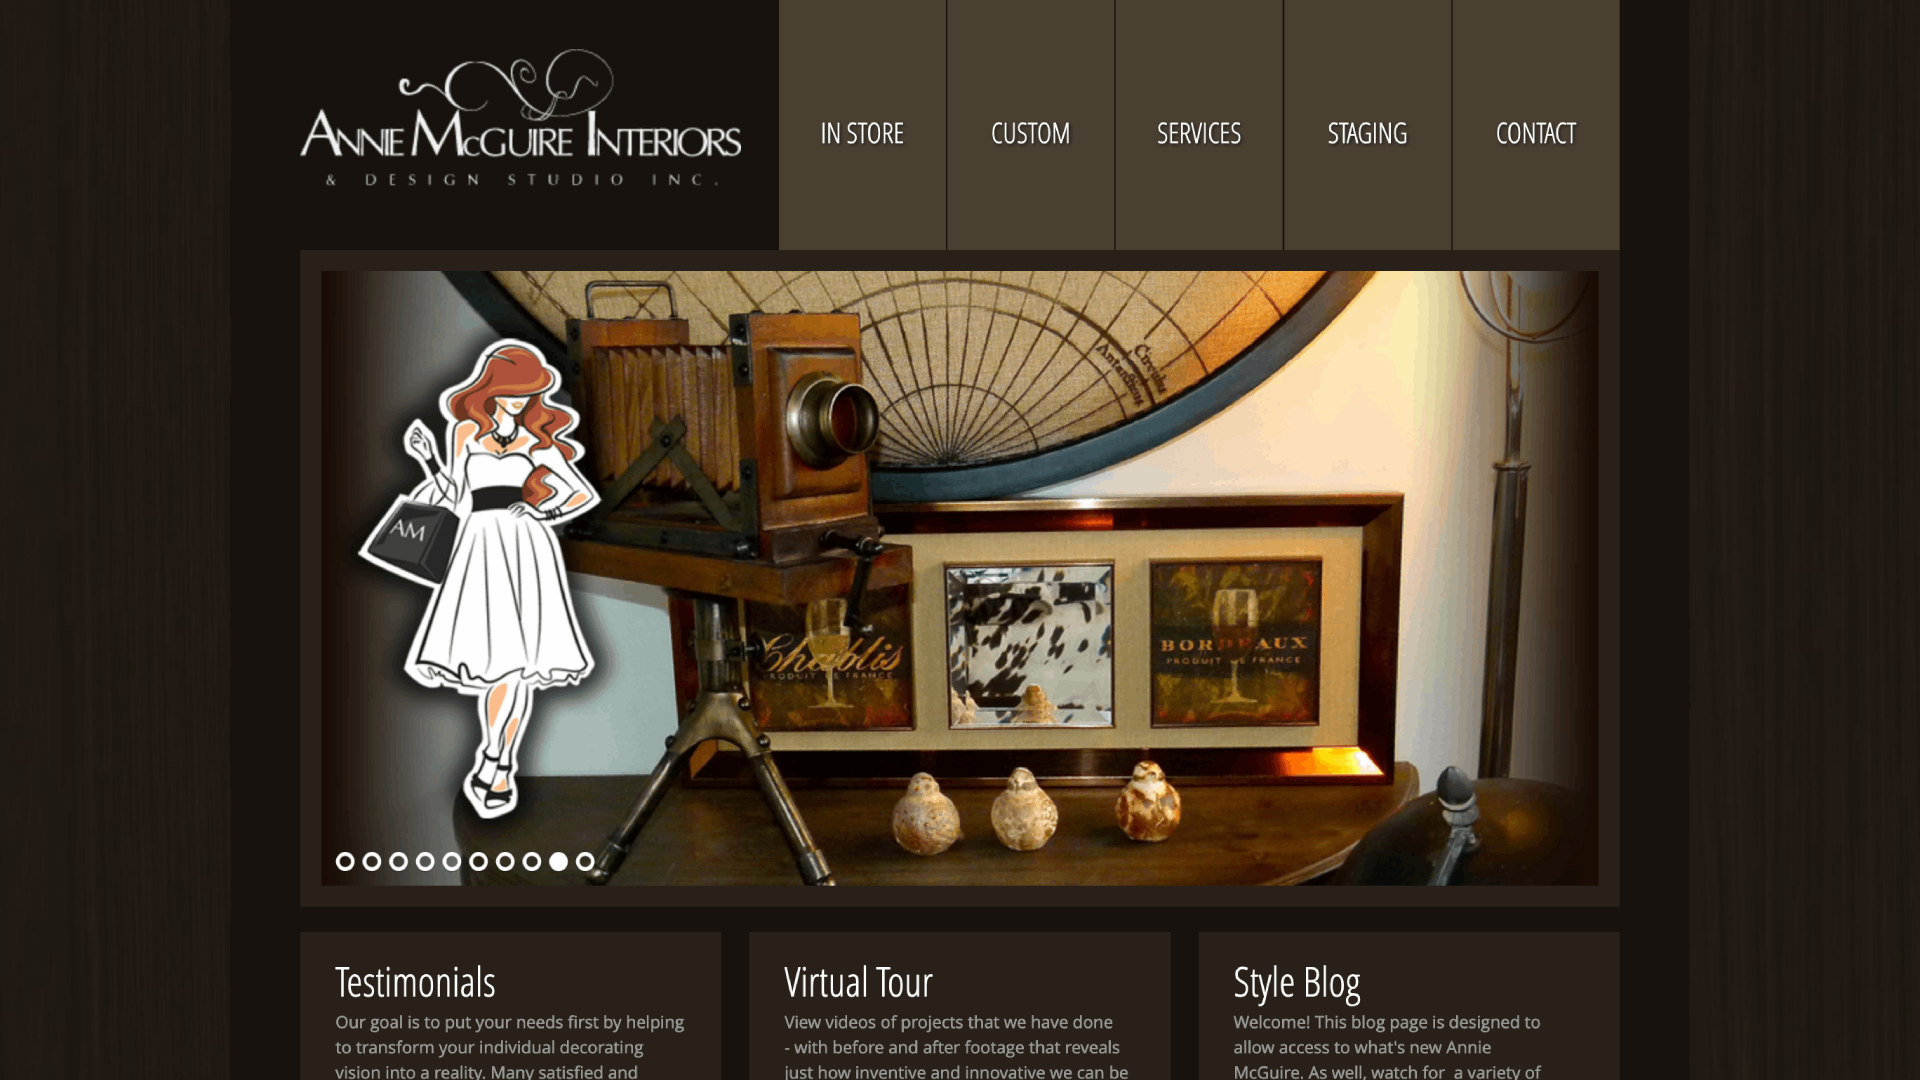 Annie McGuire Interiors & Design Studio Inc website